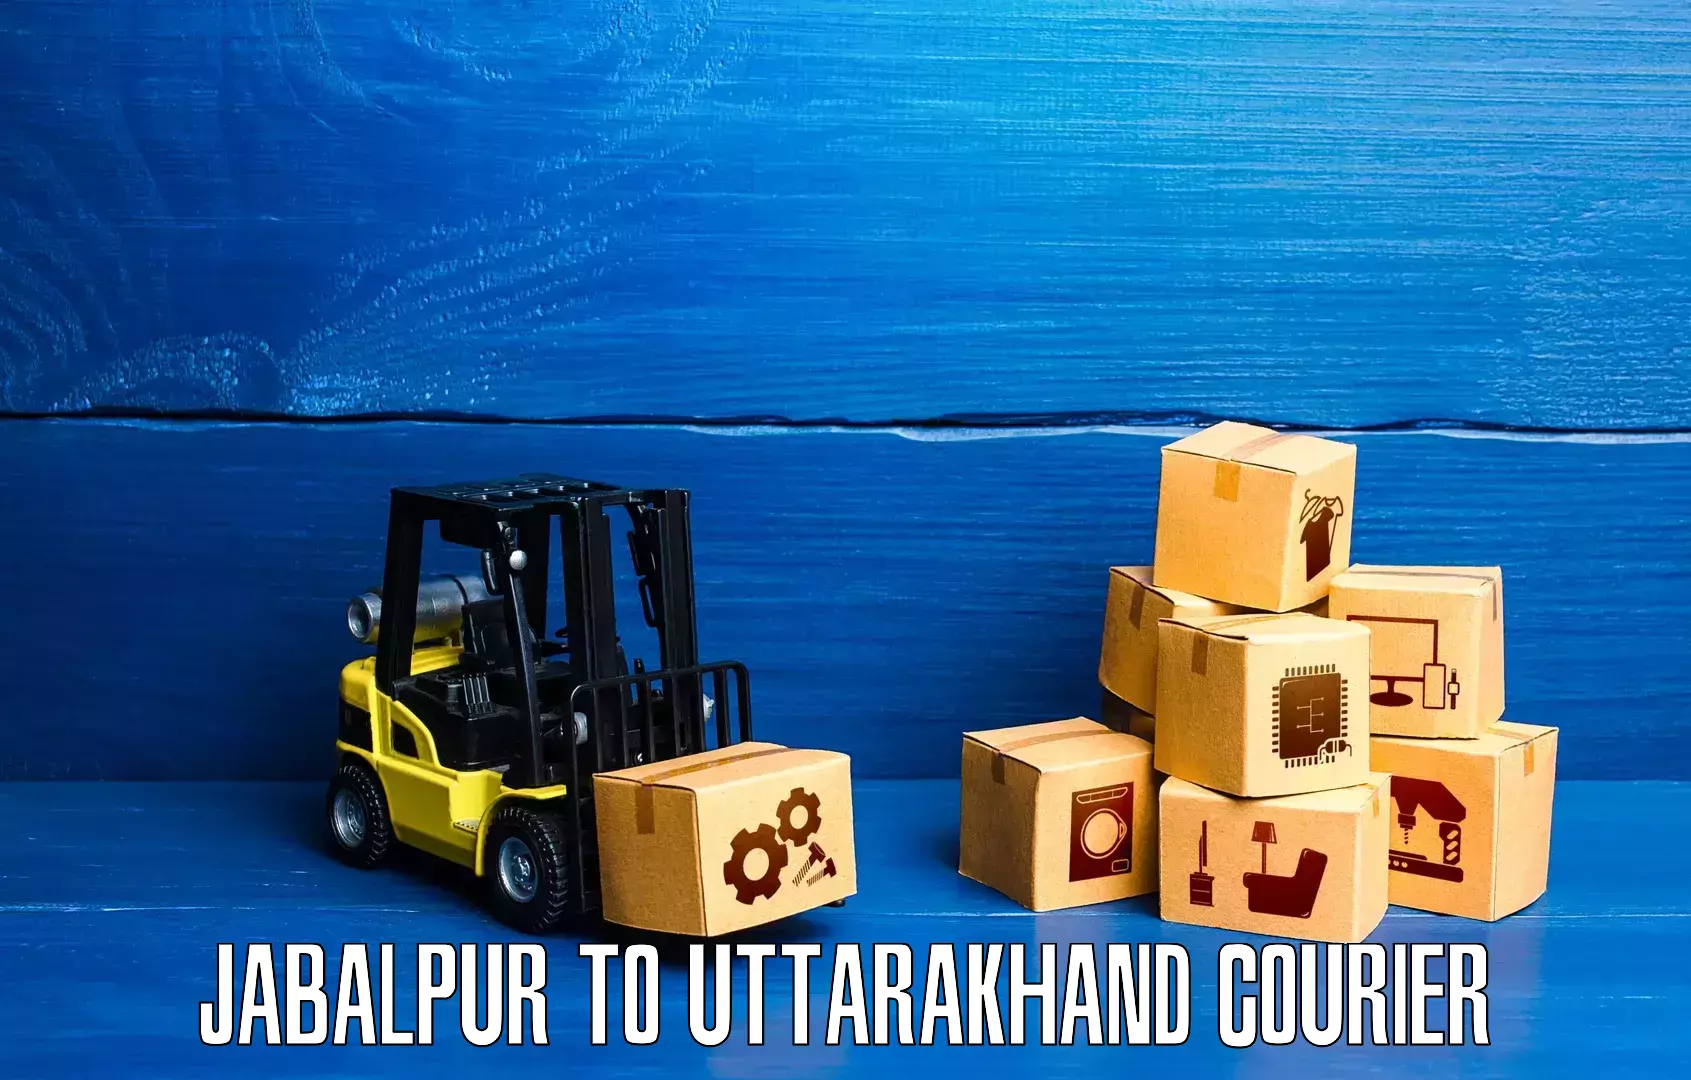 Reliable courier service Jabalpur to Uttarakhand